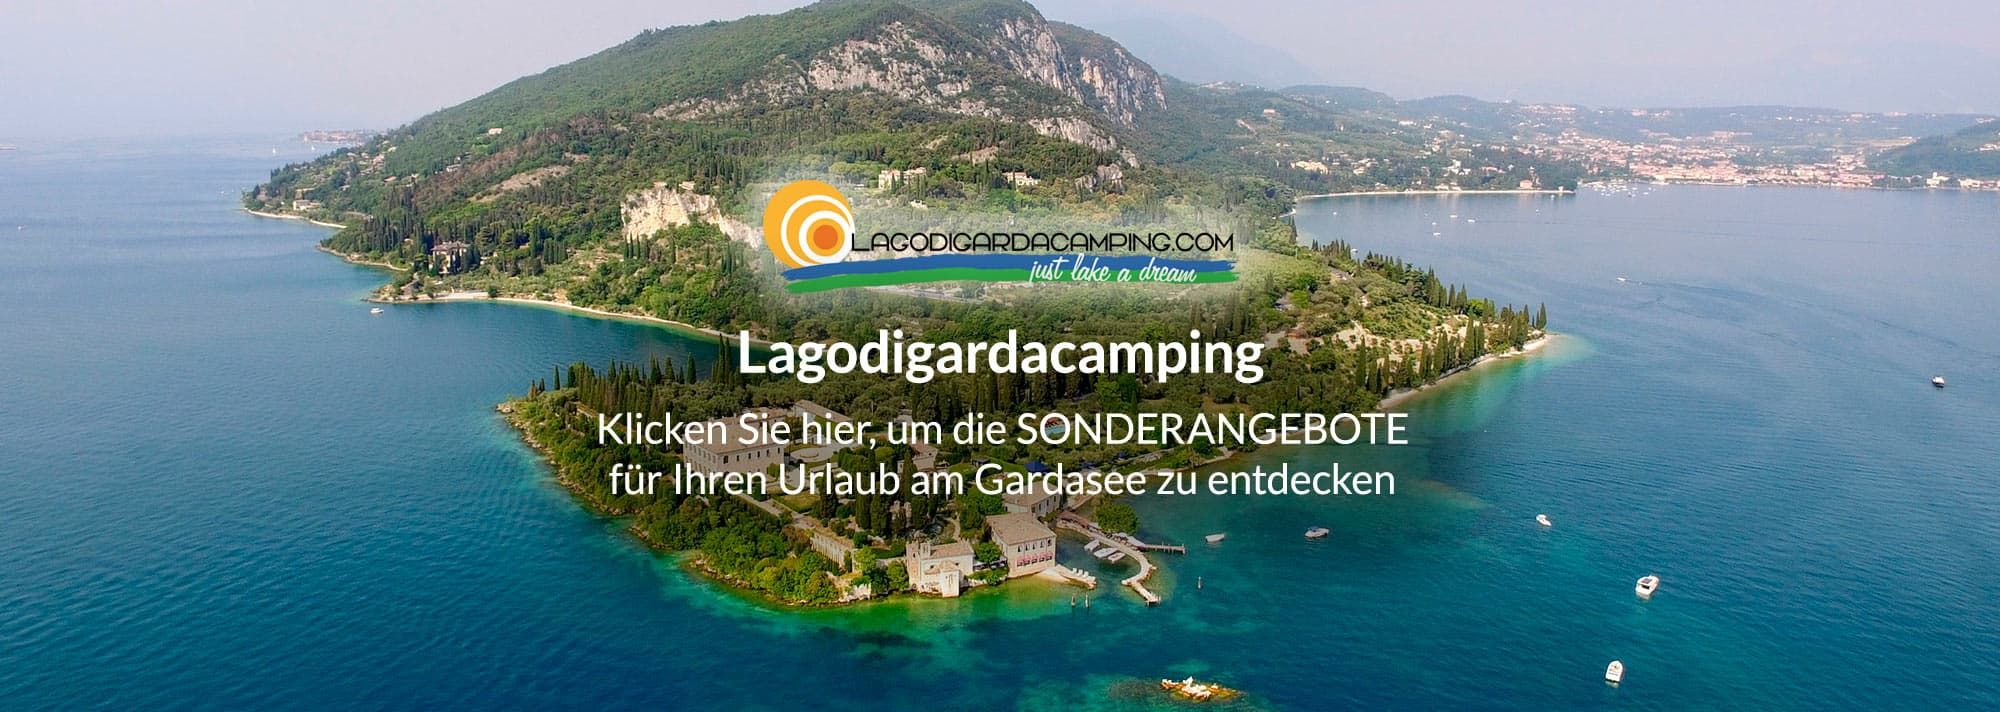 www.lagodigardacamping.com/de/